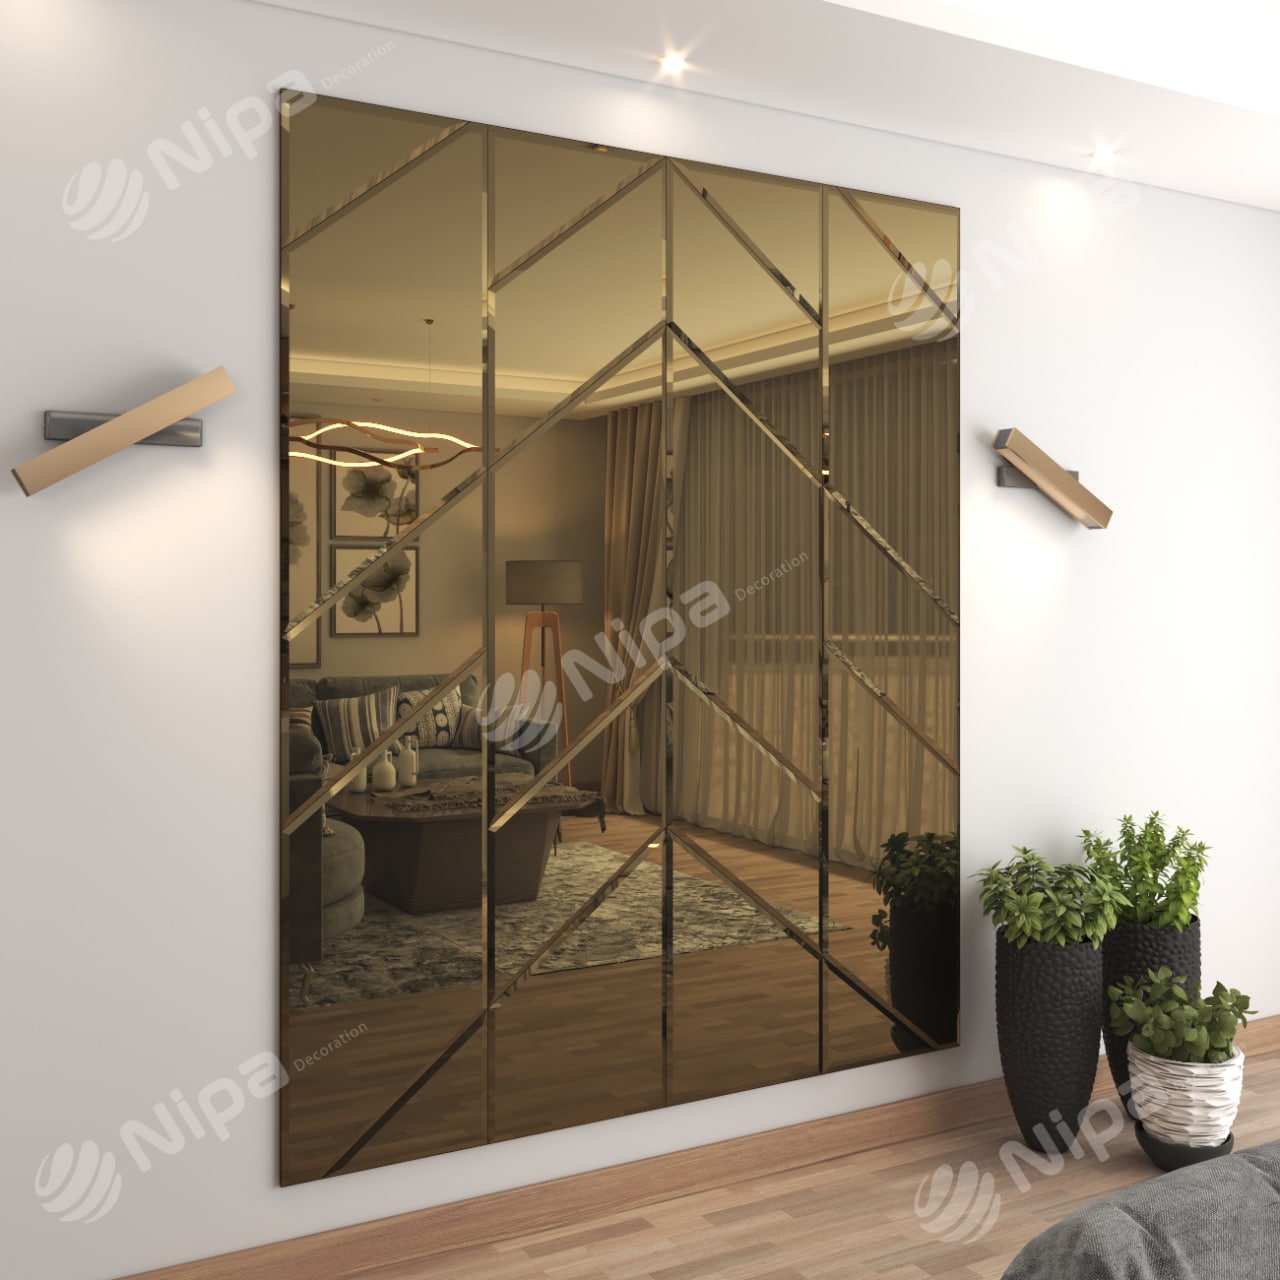 Model: Taviar – Mirror Wall Panels - Nipa decoration